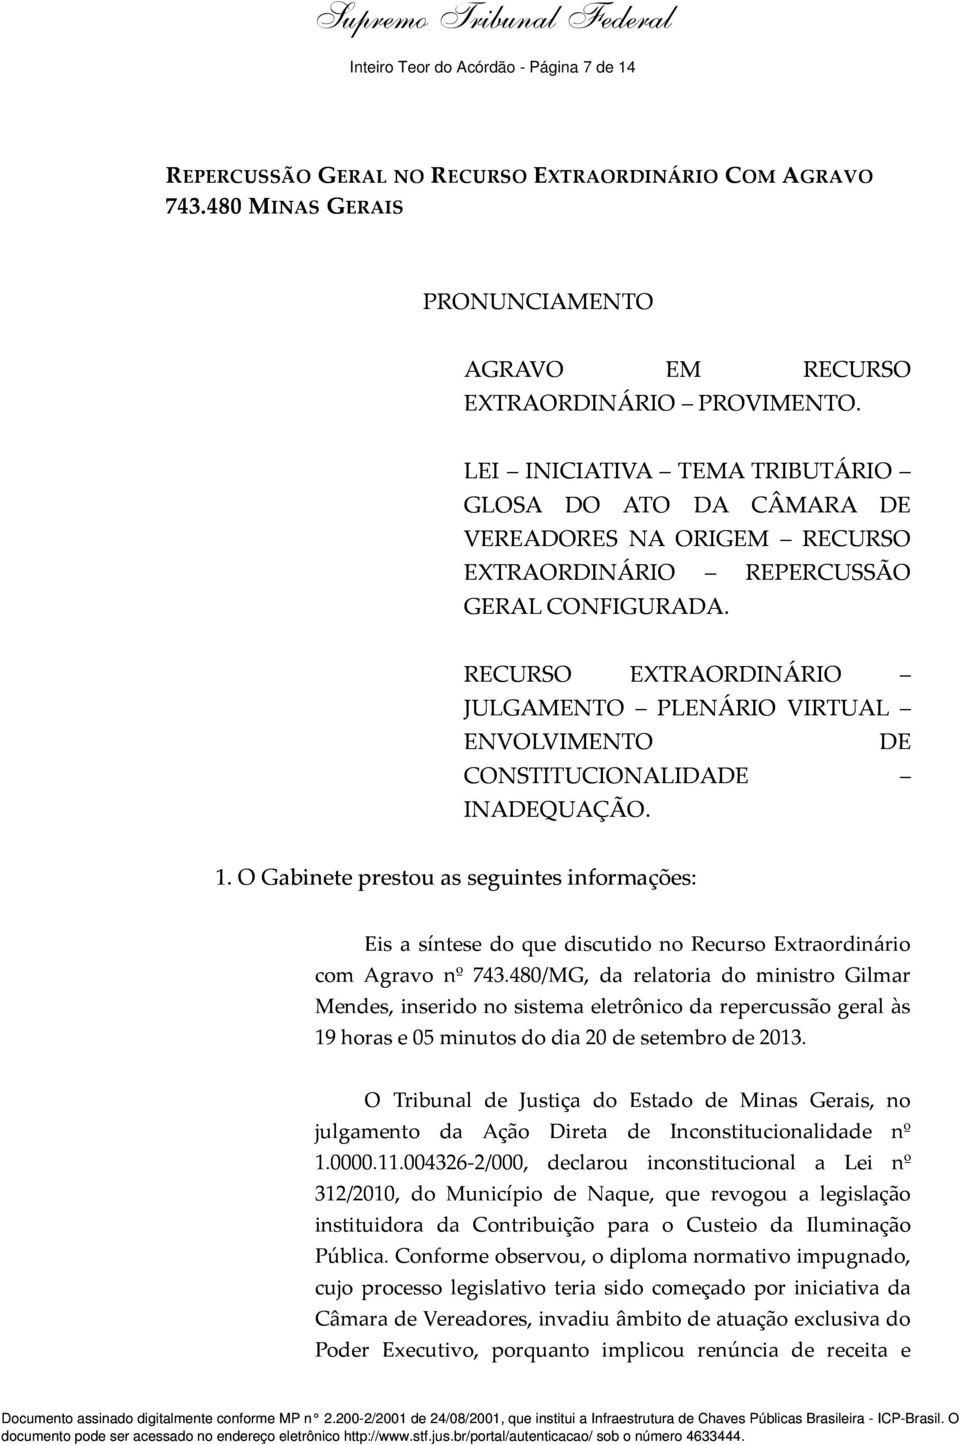 RECURSO EXTRAORDINÁRIO JULGAMENTO PLENÁRIO VIRTUAL ENVOLVIMENTO DE CONSTITUCIONALIDADE INADEQUAÇÃO. 1.